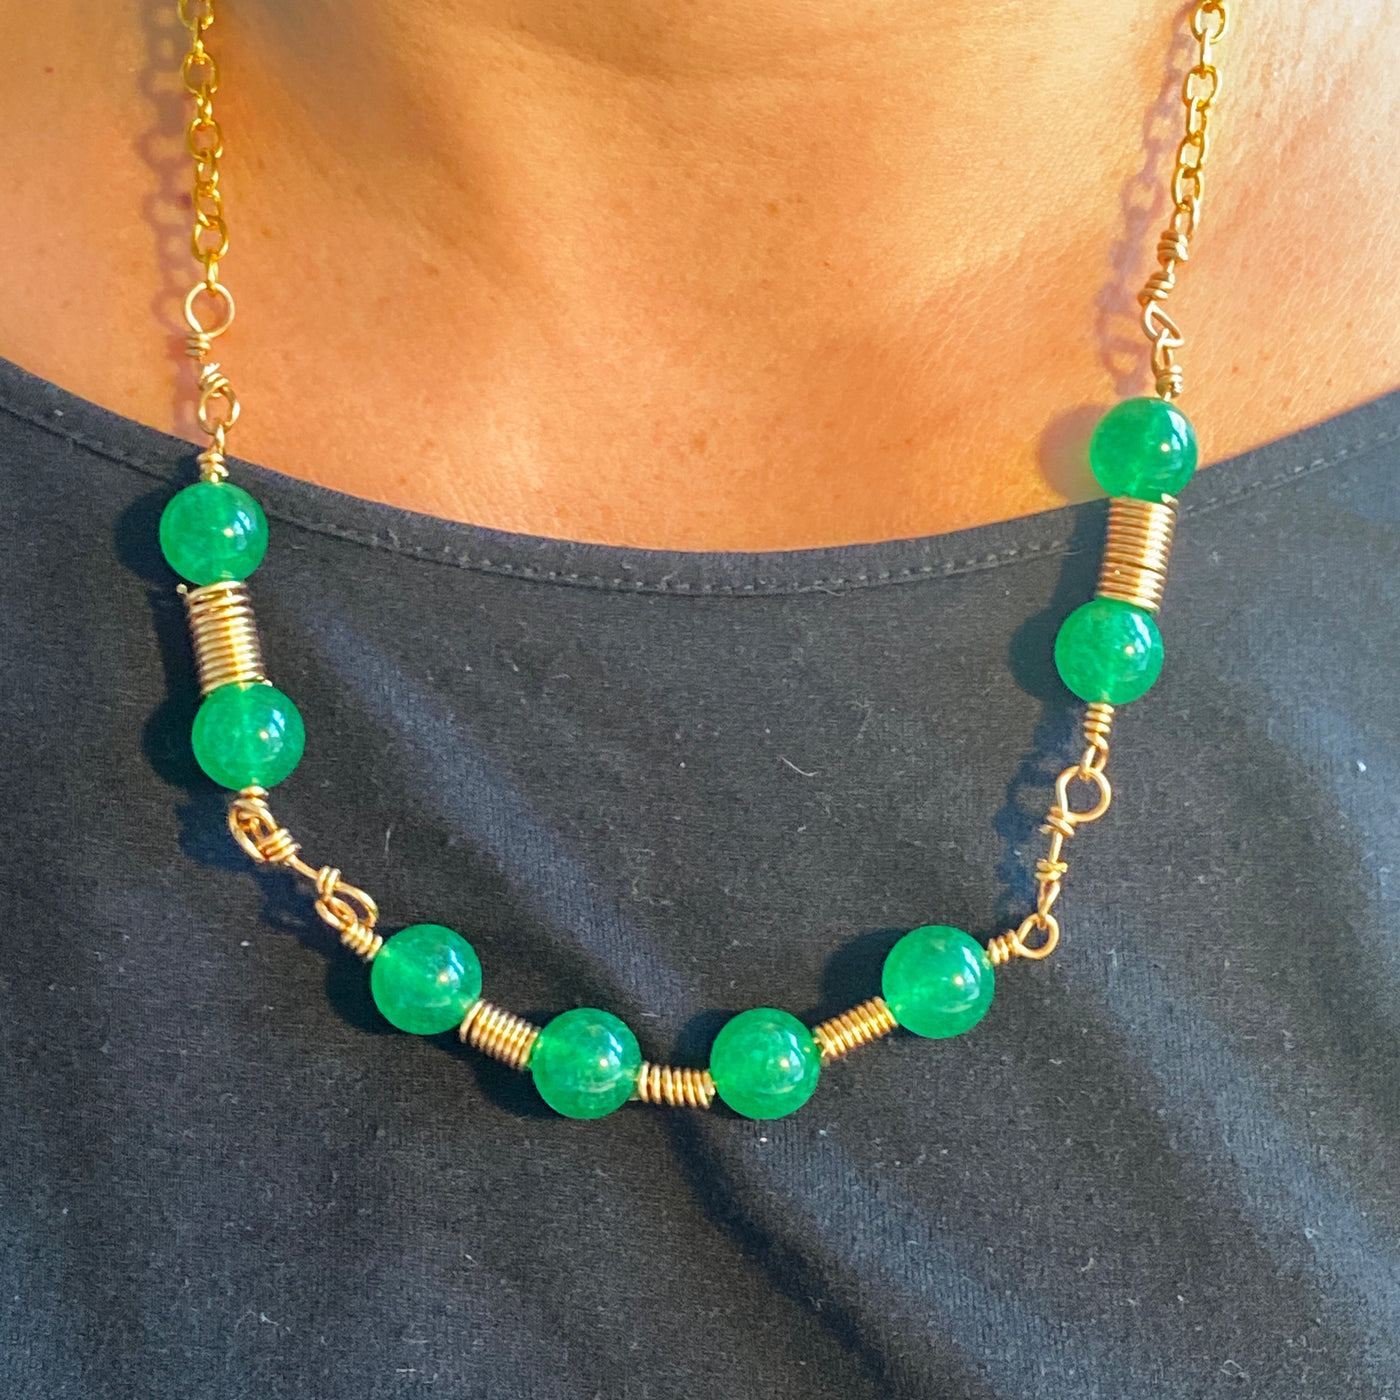 Halskette aus grünem Calcedon und Drahtkette. Liniensammlung